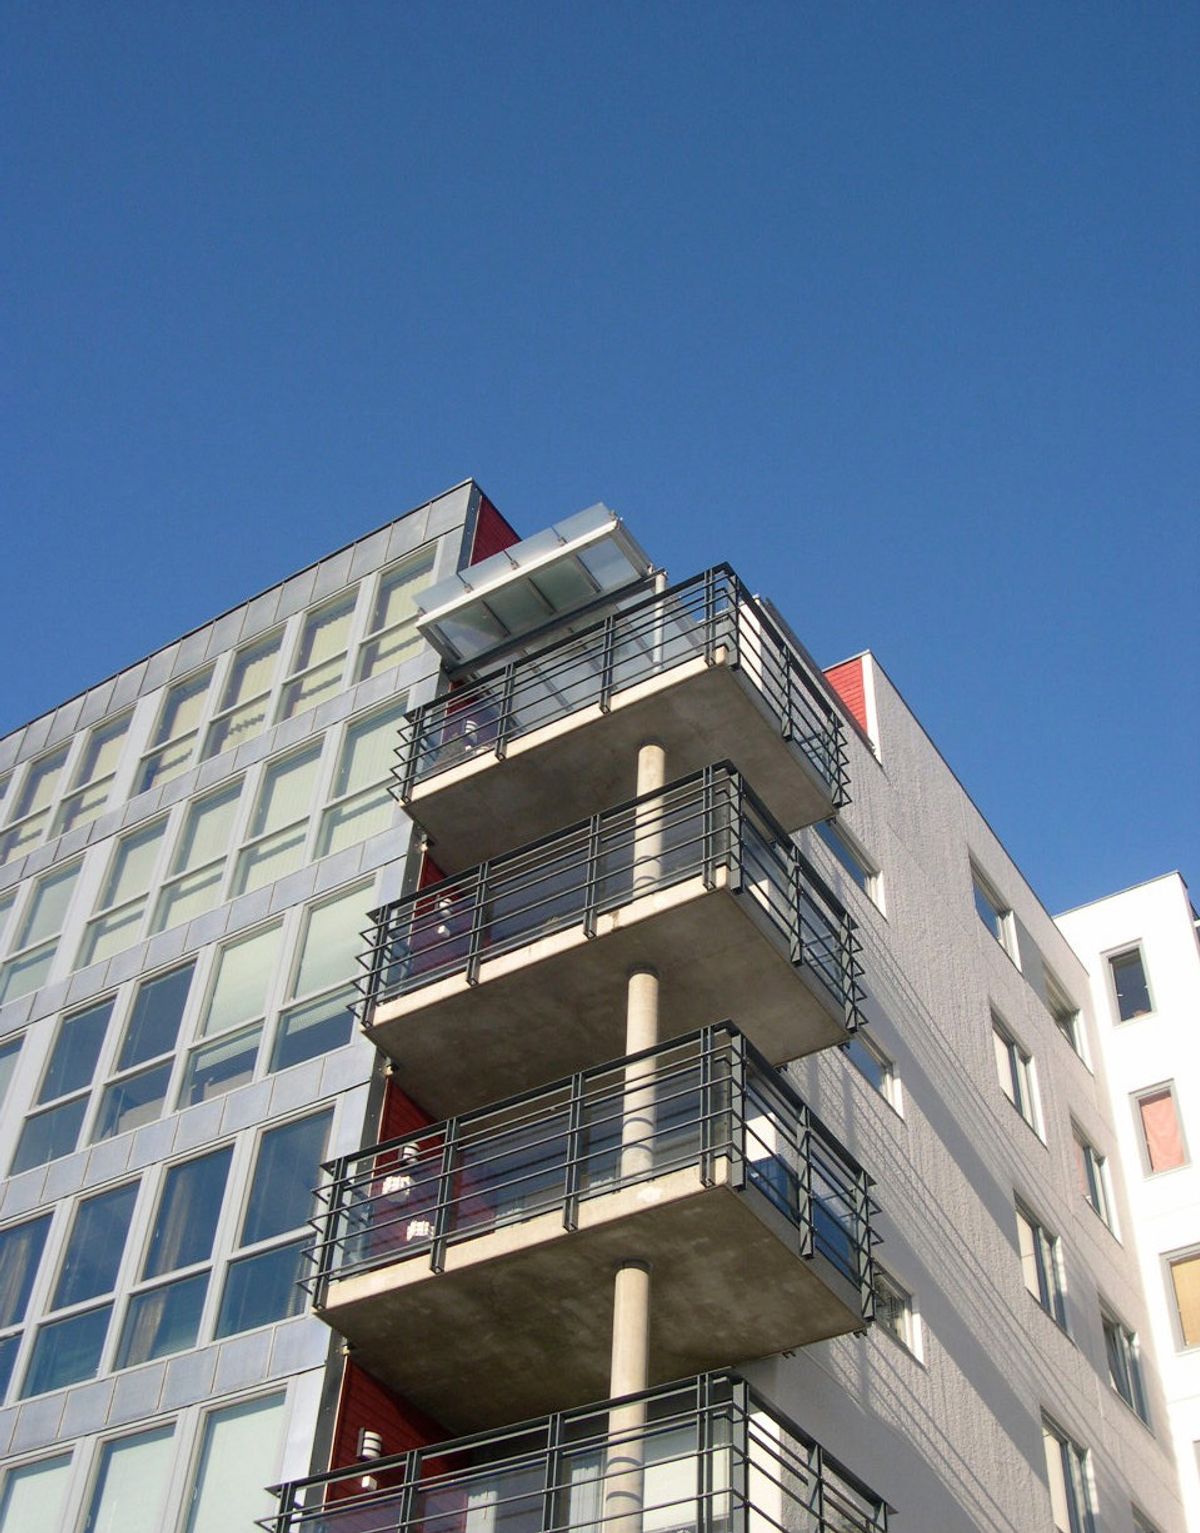 Detaljfoto av bygget som viser lys fasade og glassbalkonger under en blå himmel.